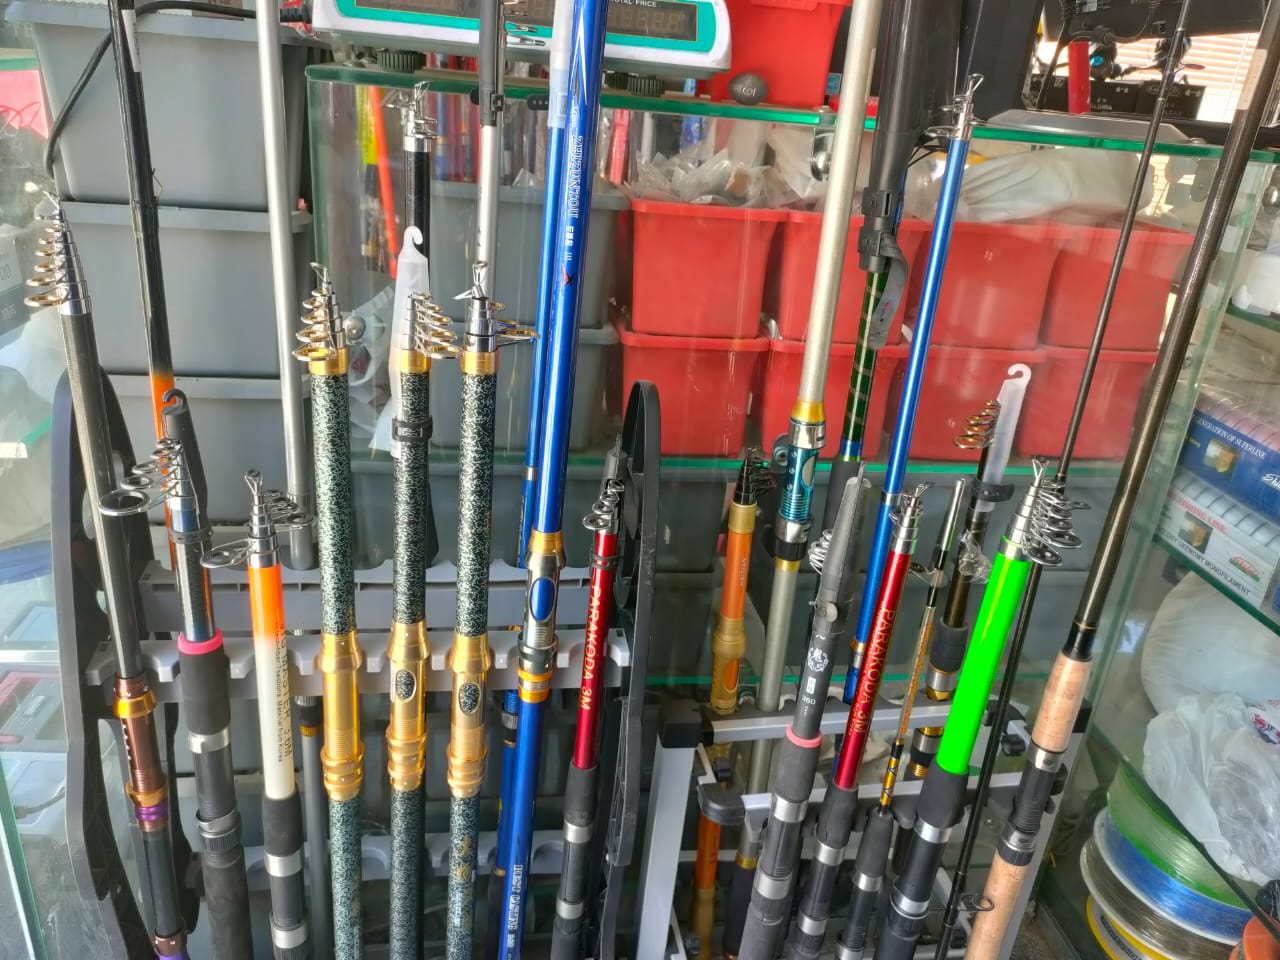  أدوات الصيد للهواة والمحترفين  (3)